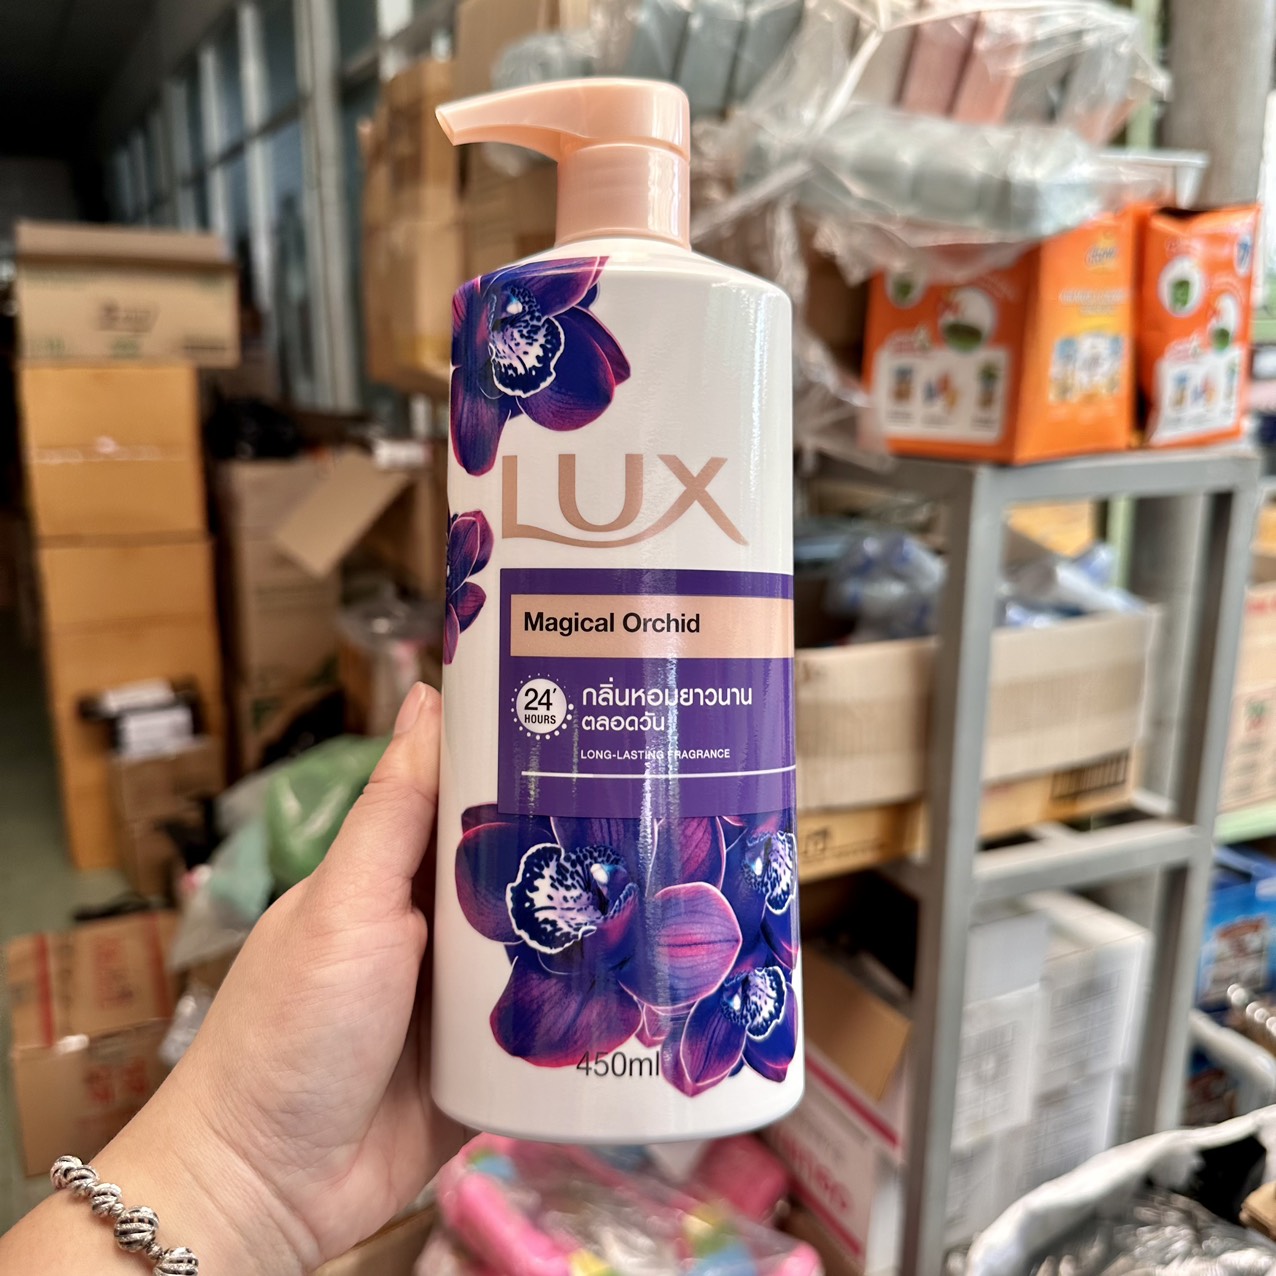 [HCM]Sữa Tắm Lux Hương Nước Hoa Thái Lan 450ml